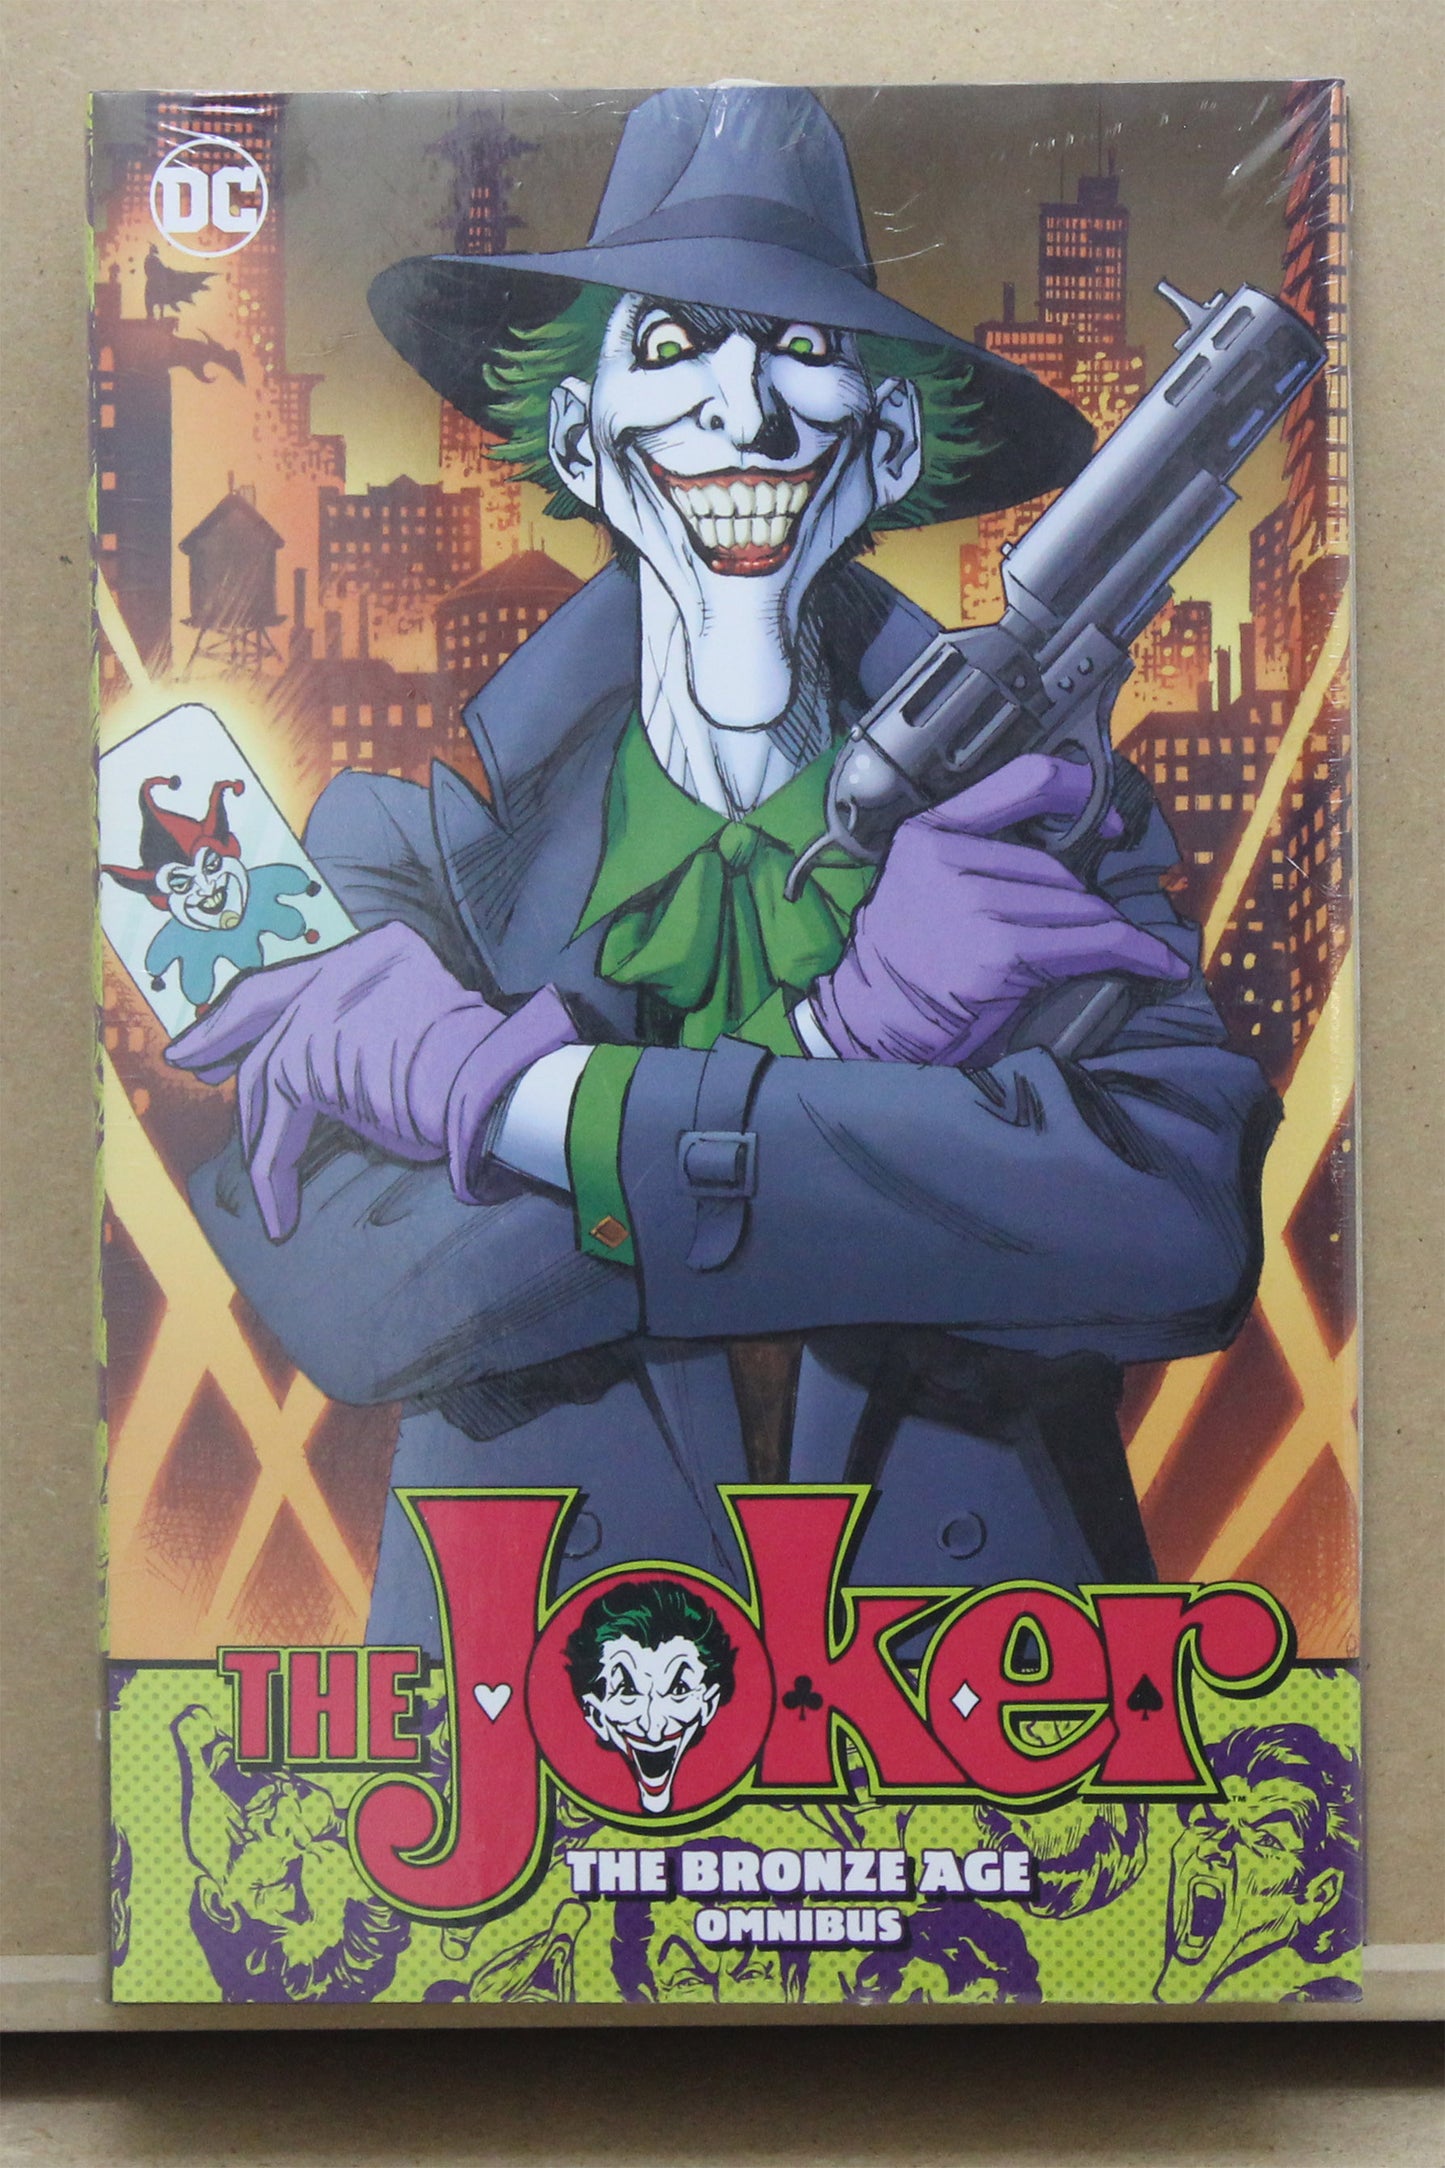 The Joker Bronze Age Omnibus